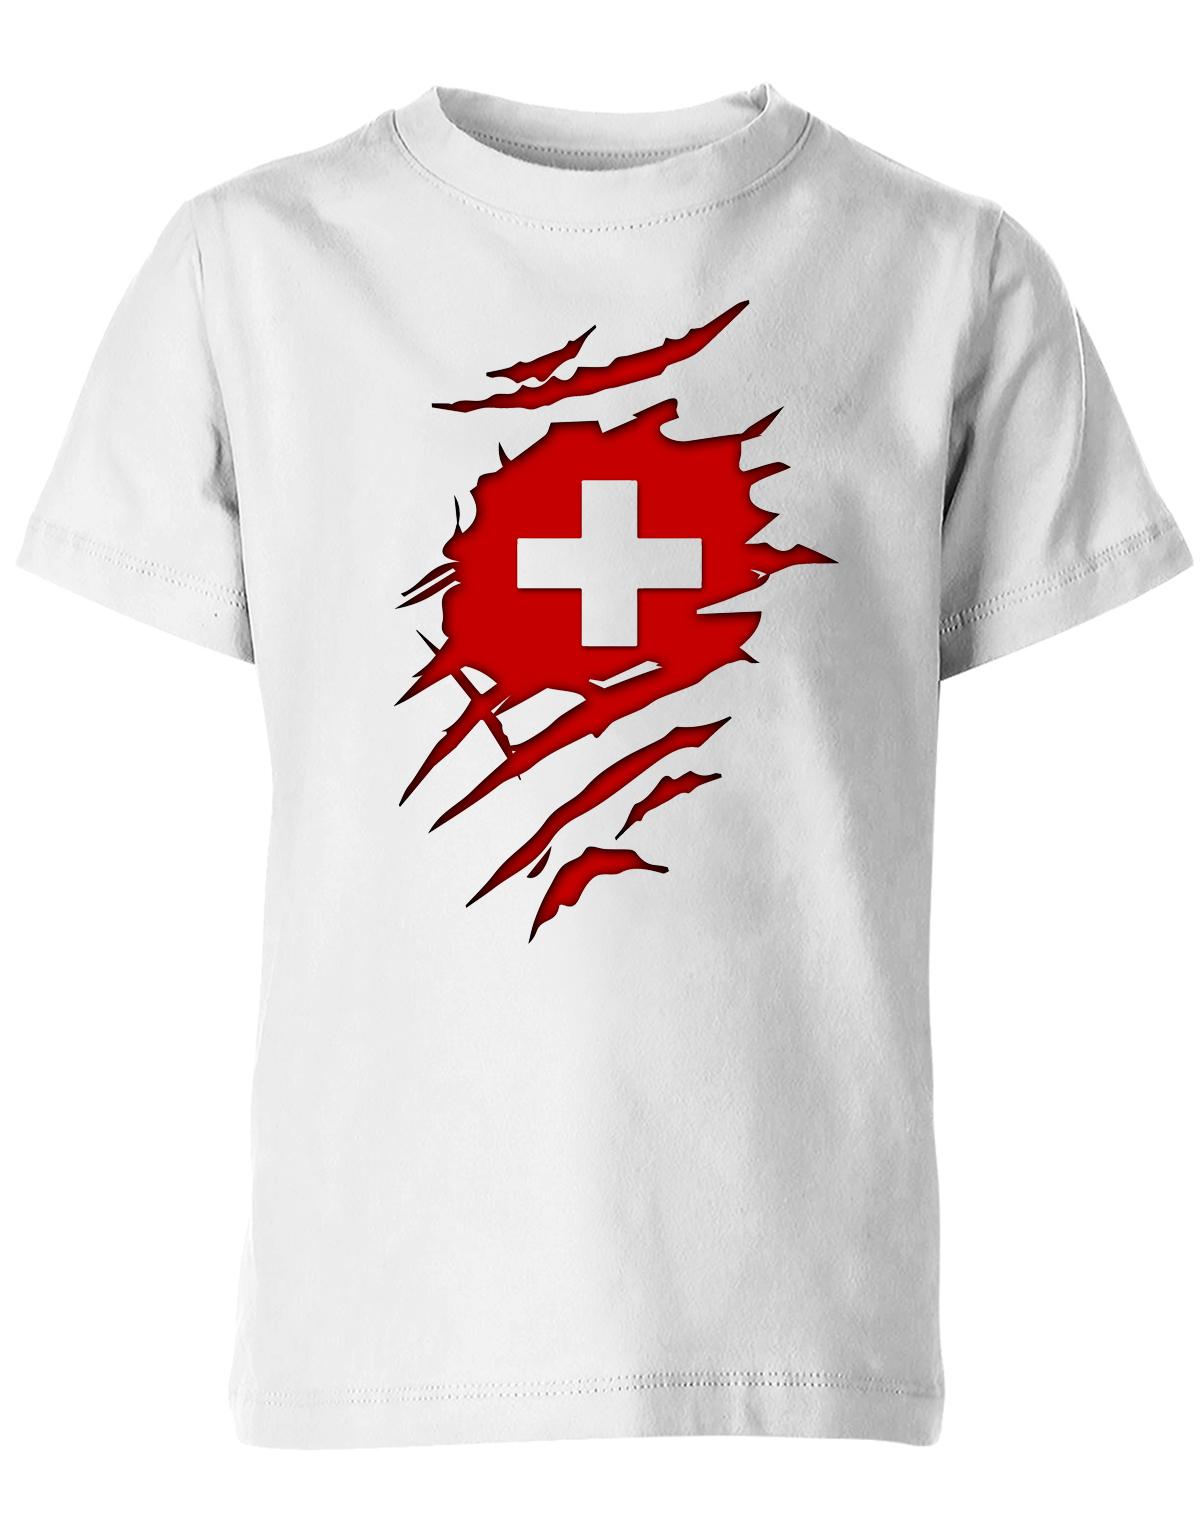 SChweiz-aufgerissen-Kindeer-Shirt-Weiss